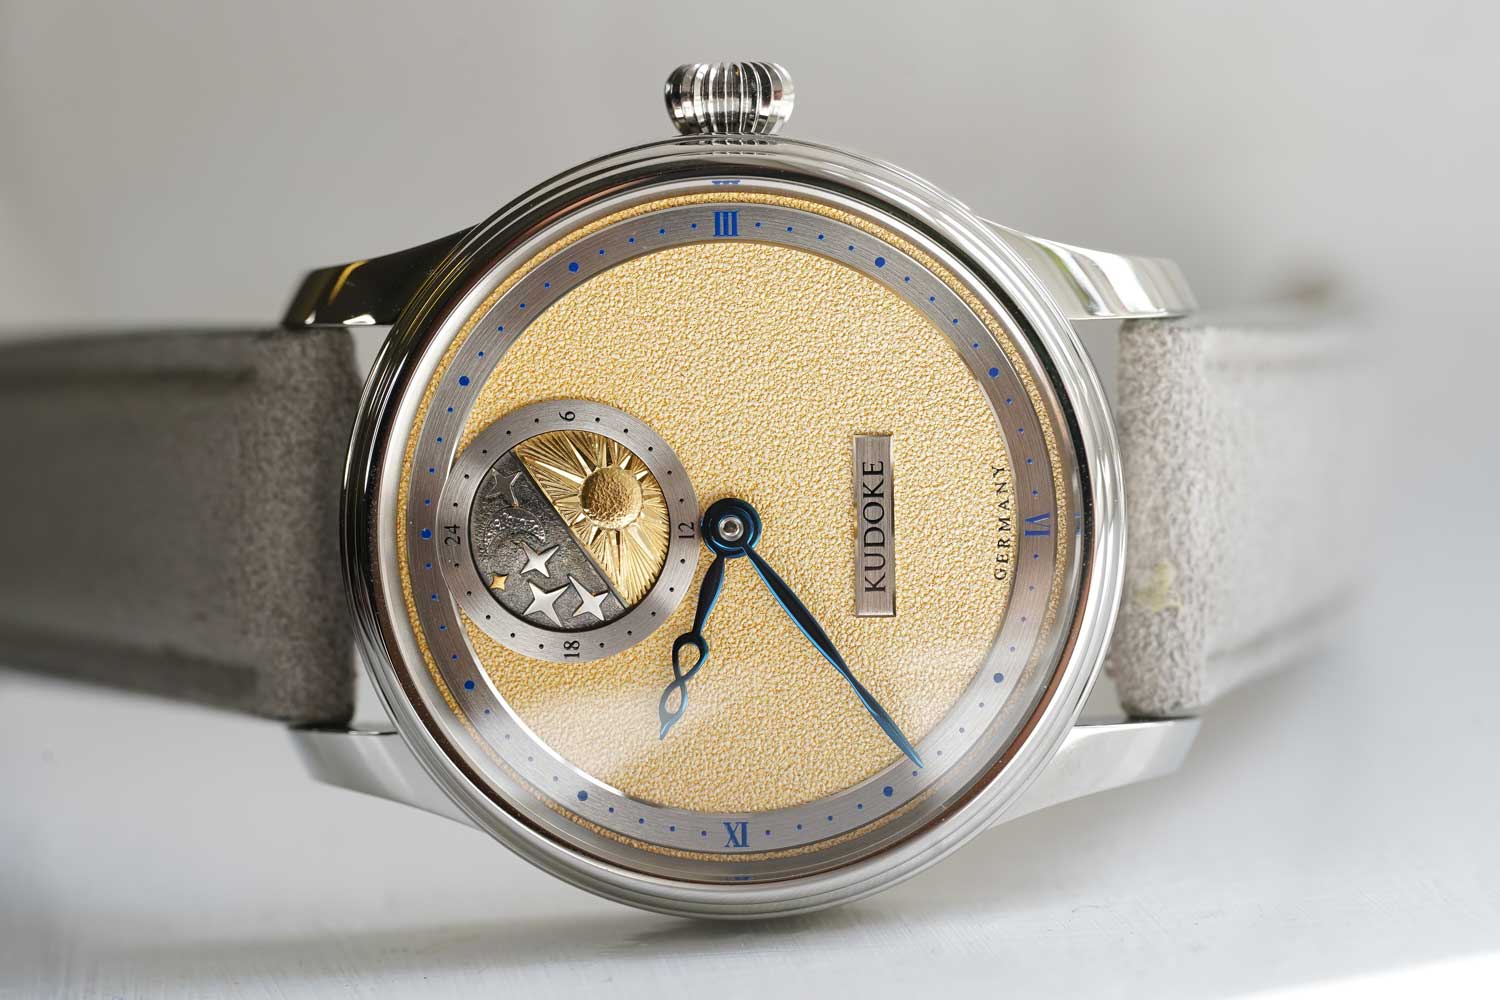 Đồng hồ Kudoke 2 với phiên bản giới hạn mỗi năm 10 chiếc